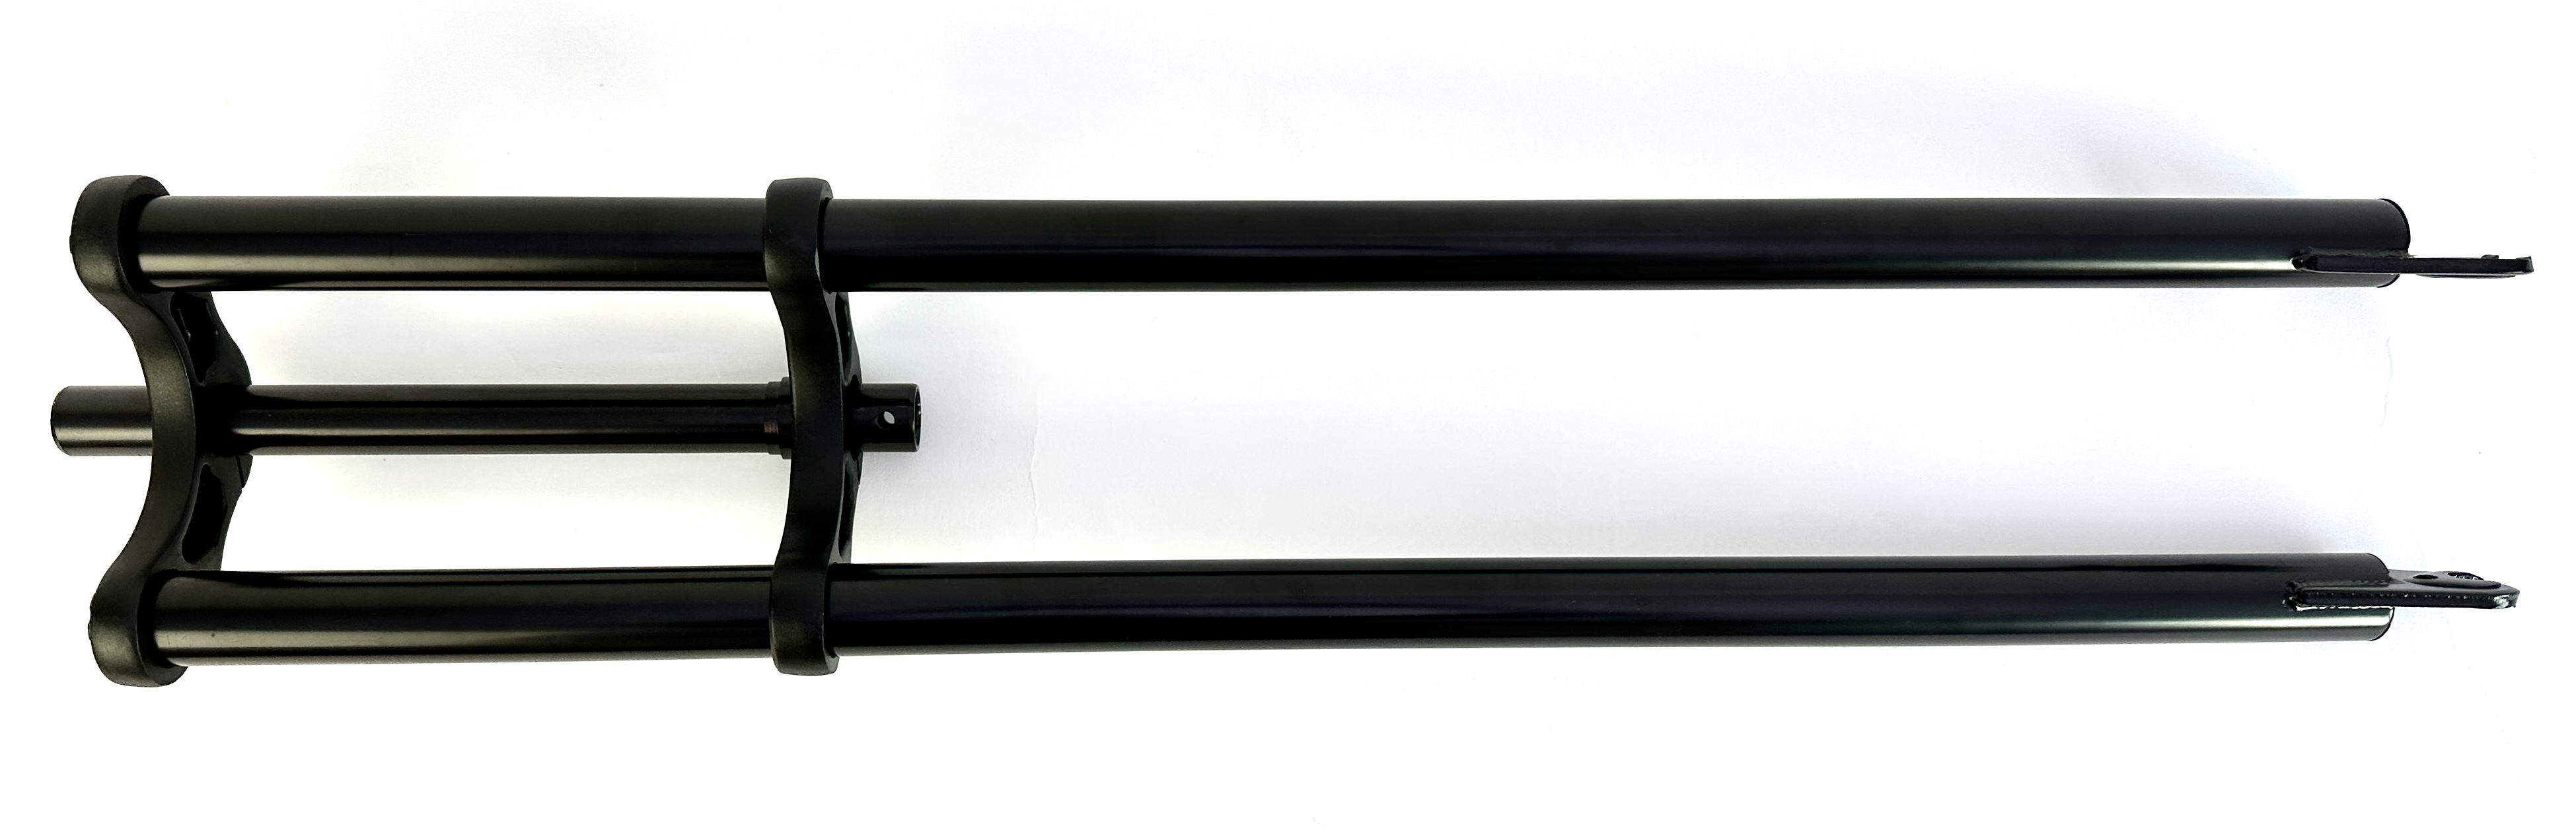 5-Doppelbrückengabel, schwarz 800 mm, für 20-28 Zoll-Reifen 1 Zoll Schaft